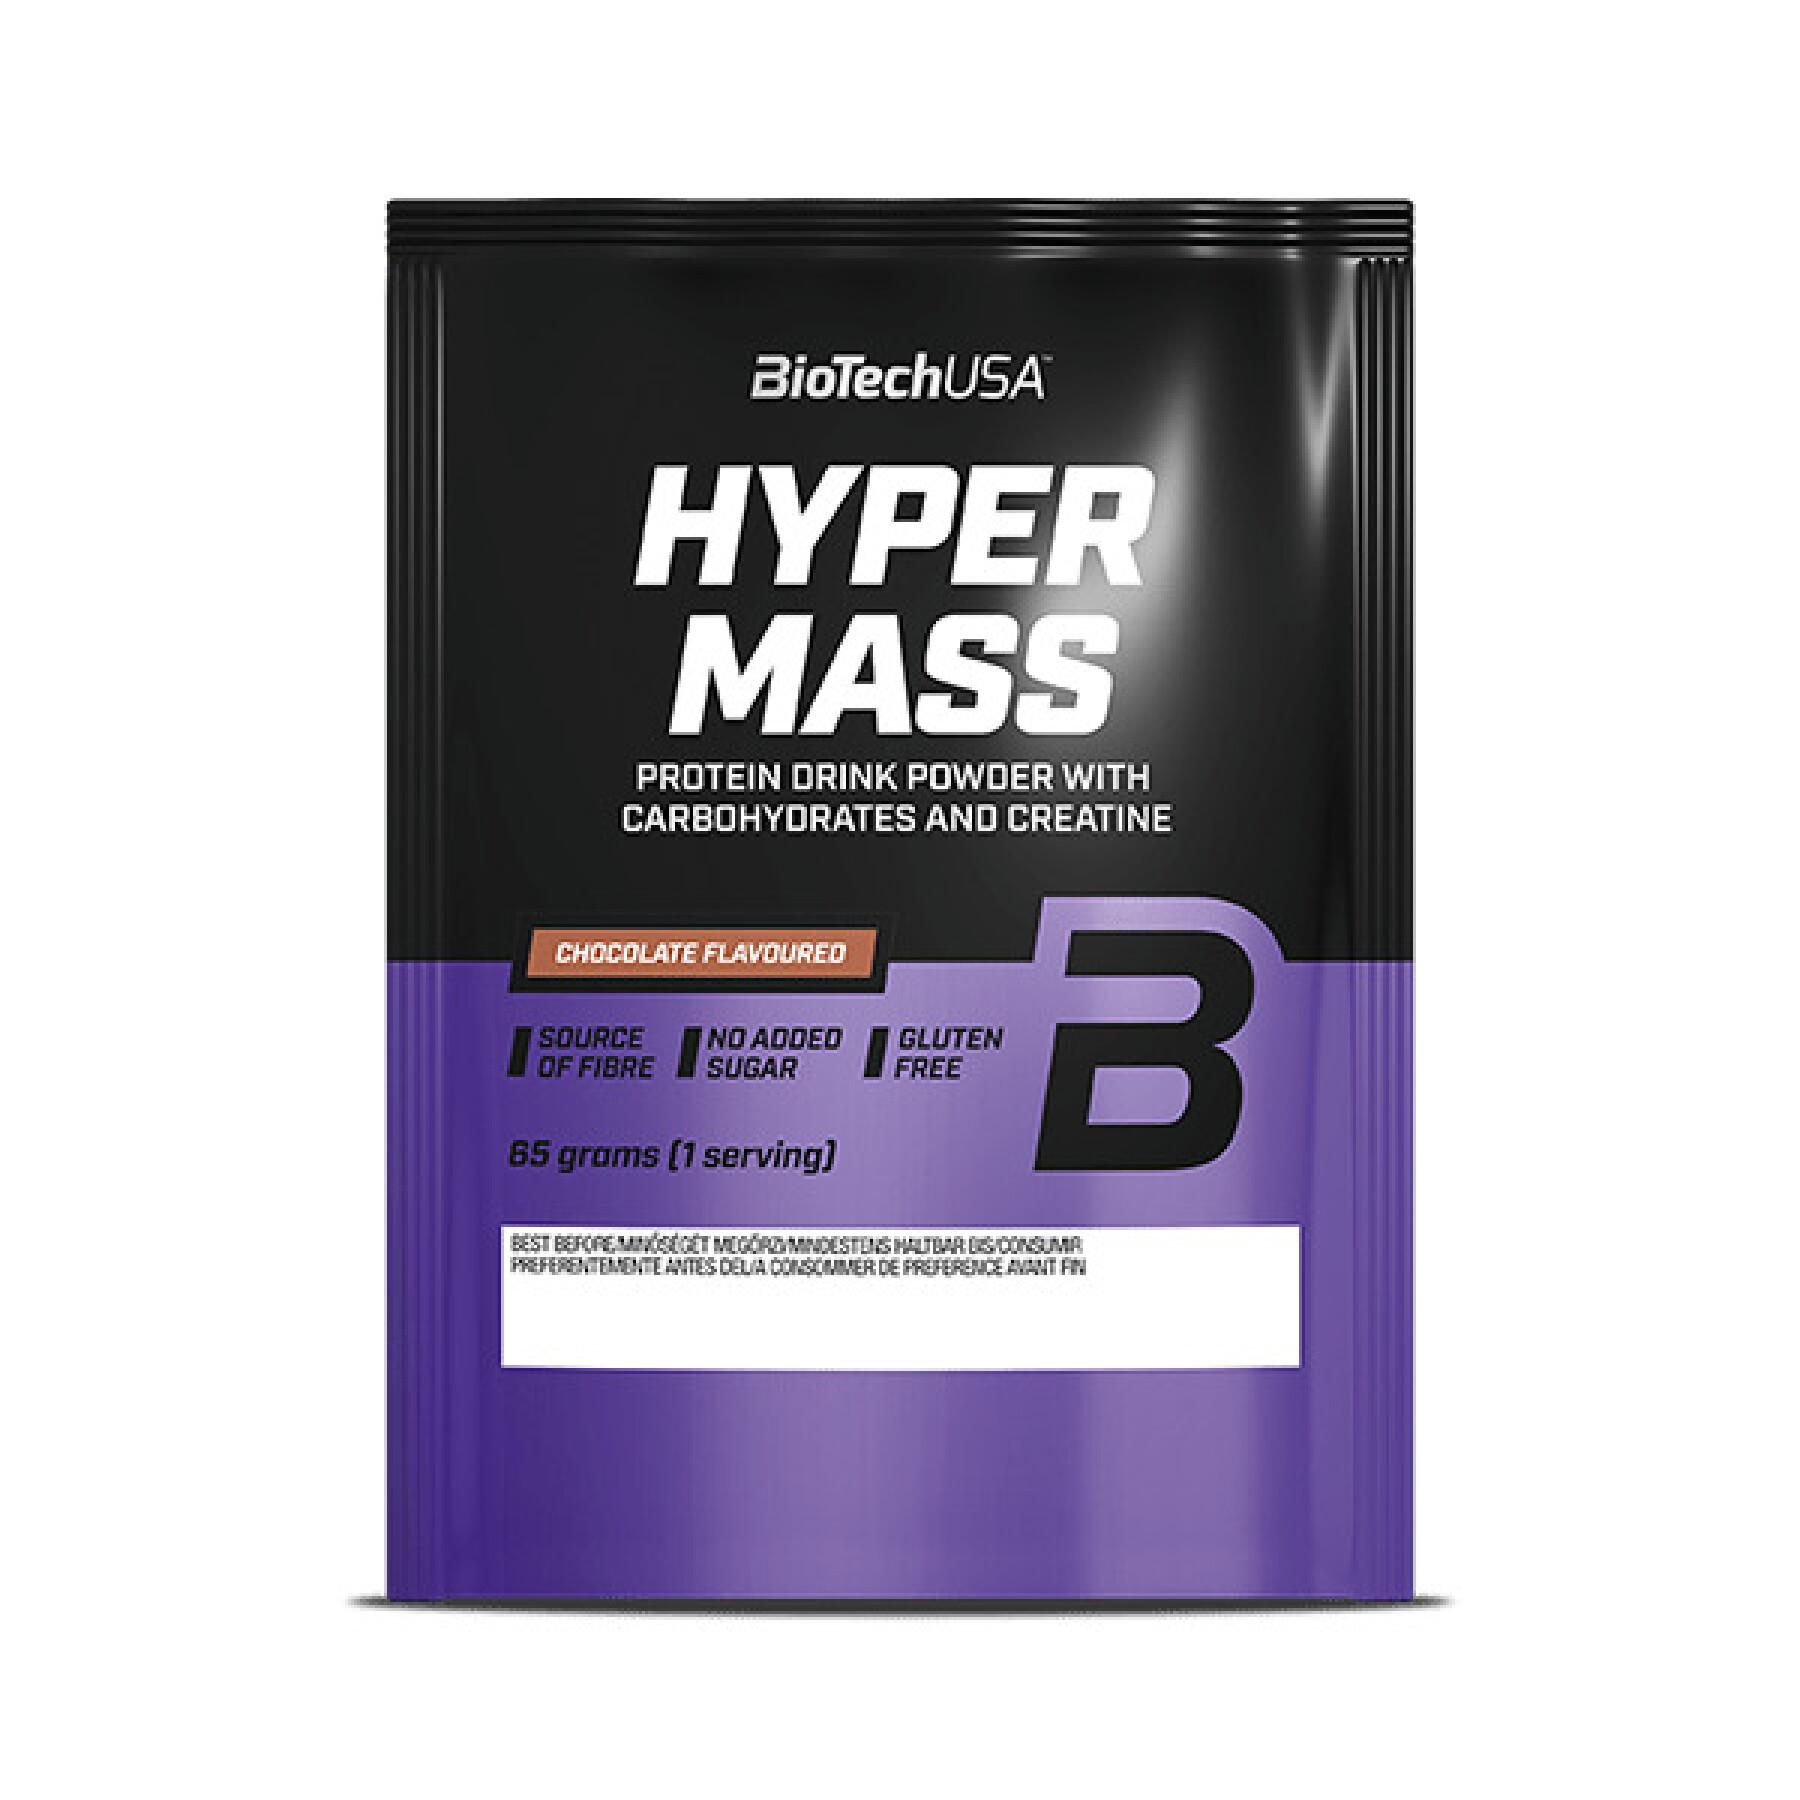 Batch of 40 bags of proteins Biotech USA hyper mass - Vanille - 65g